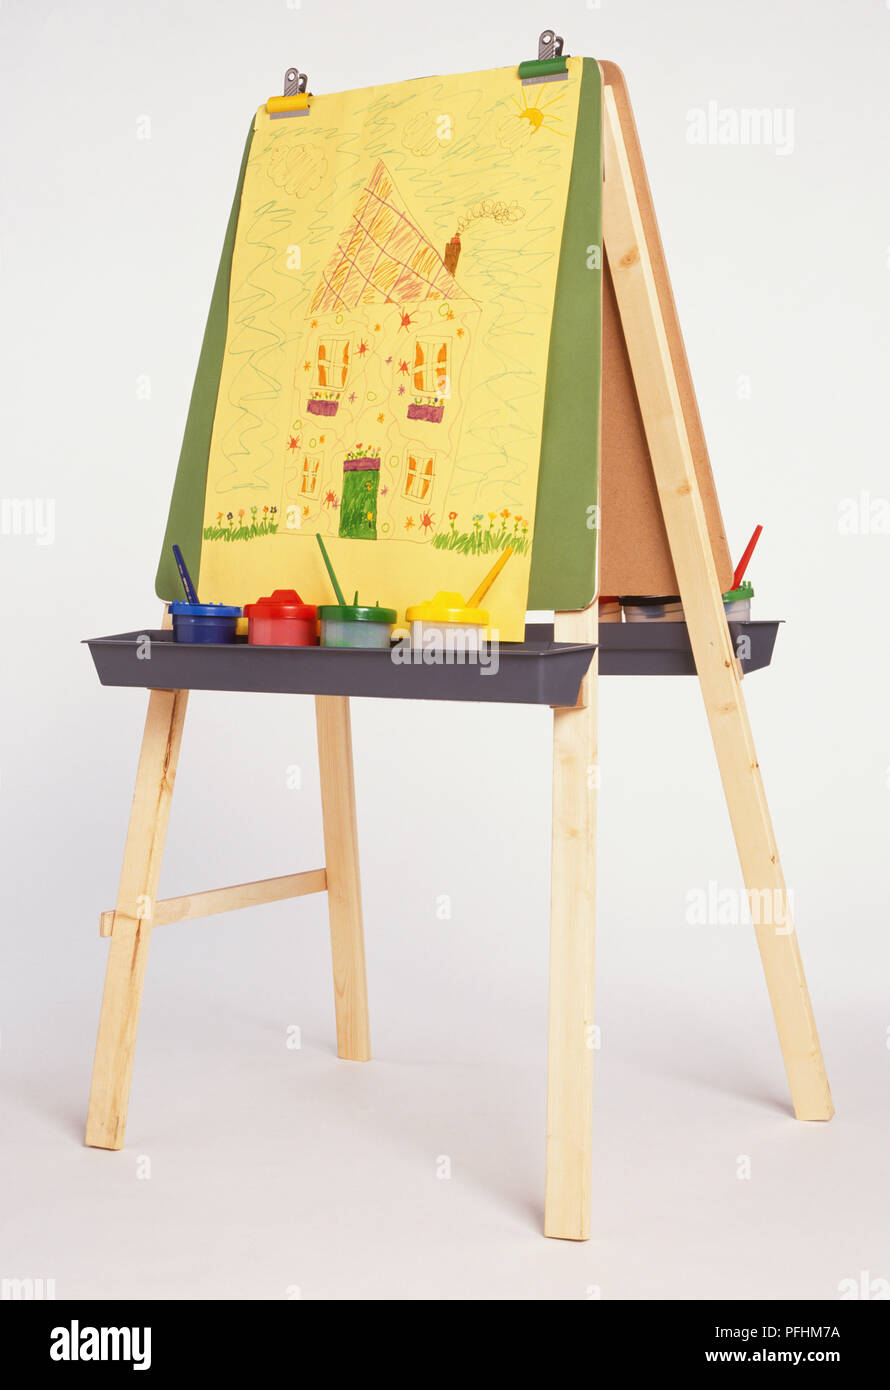 La peinture de l'enfant de chambre avec cheminée sur fumeurs de chevalet, les pots de peinture avec des pinceaux sur bac. Banque D'Images